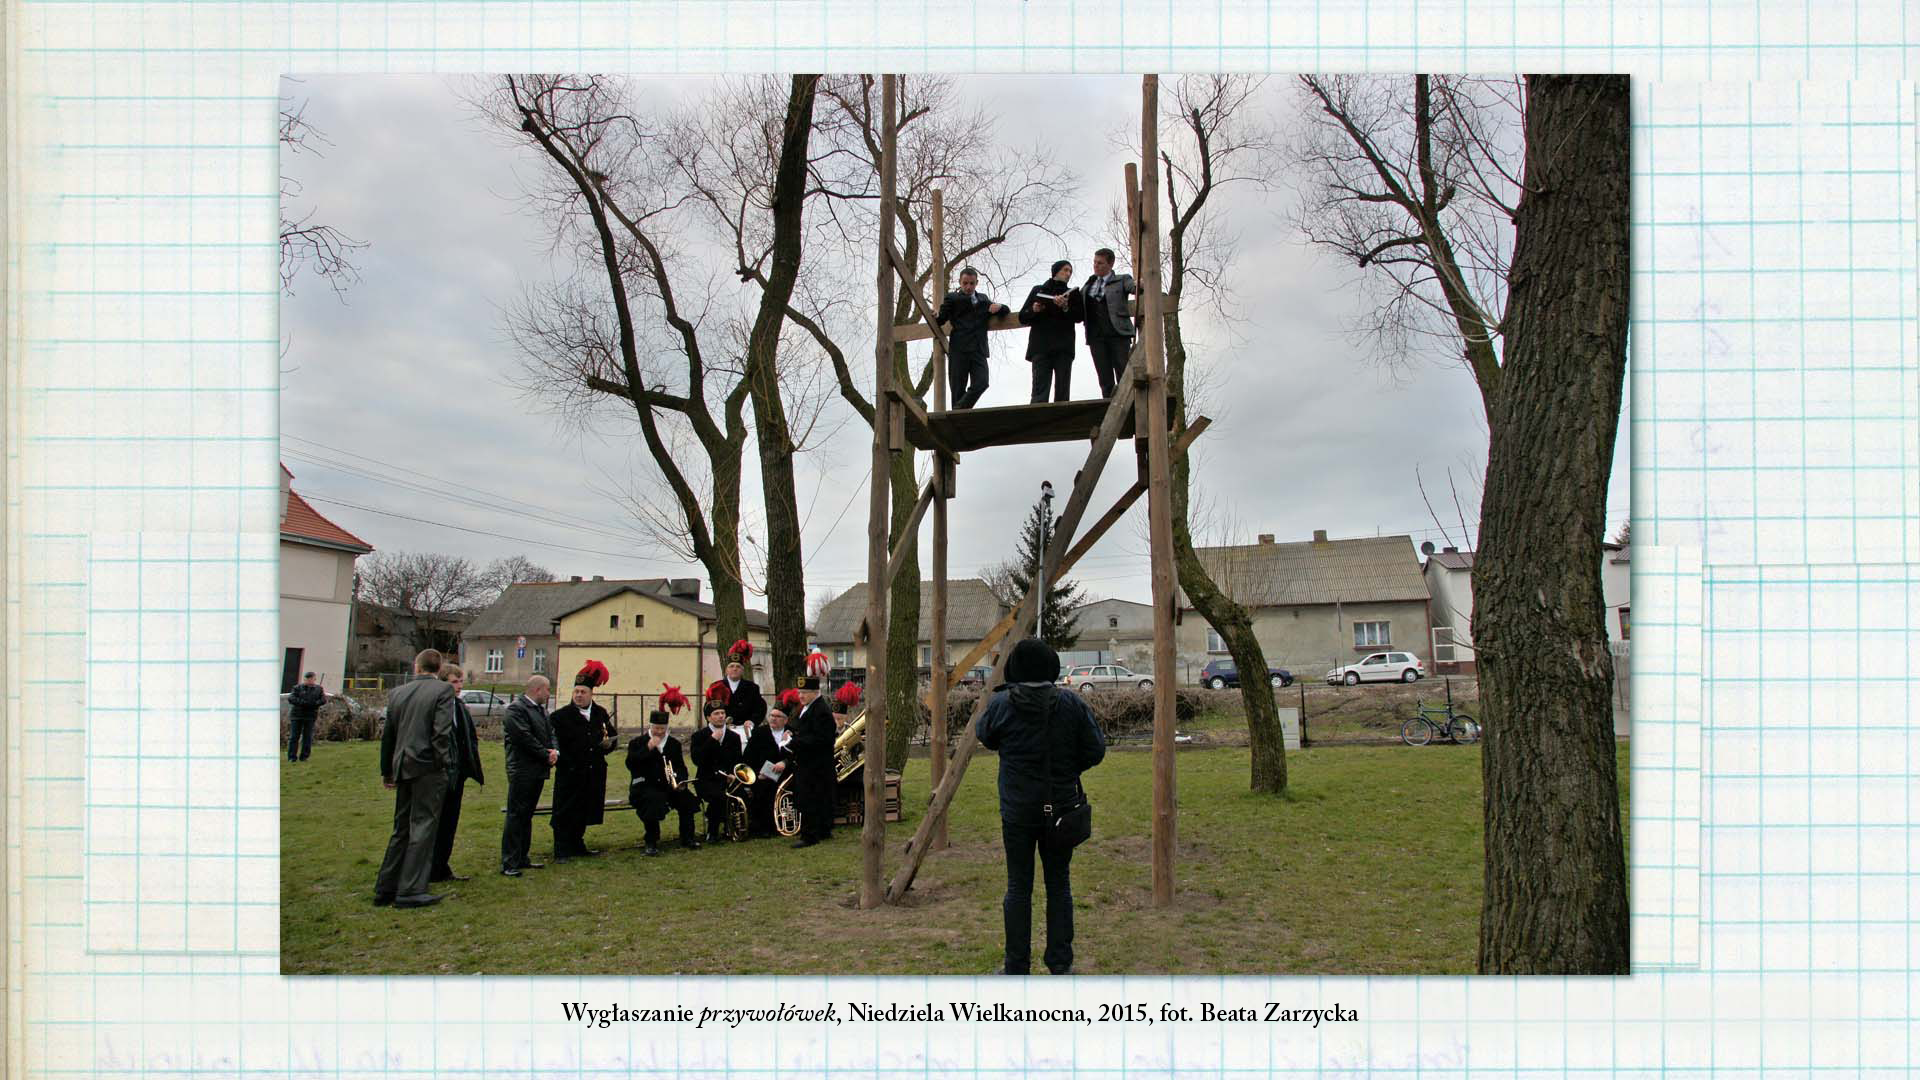 Wygłaszanie przywołówek, Niedziela Wielkanocna, 2004, fot. Damian Kramski Zdjęcie kolorowe. Trzech mężczyzn stojąc na drewnianej konstrukcji odczytuje notatki z czerwonej księgi.